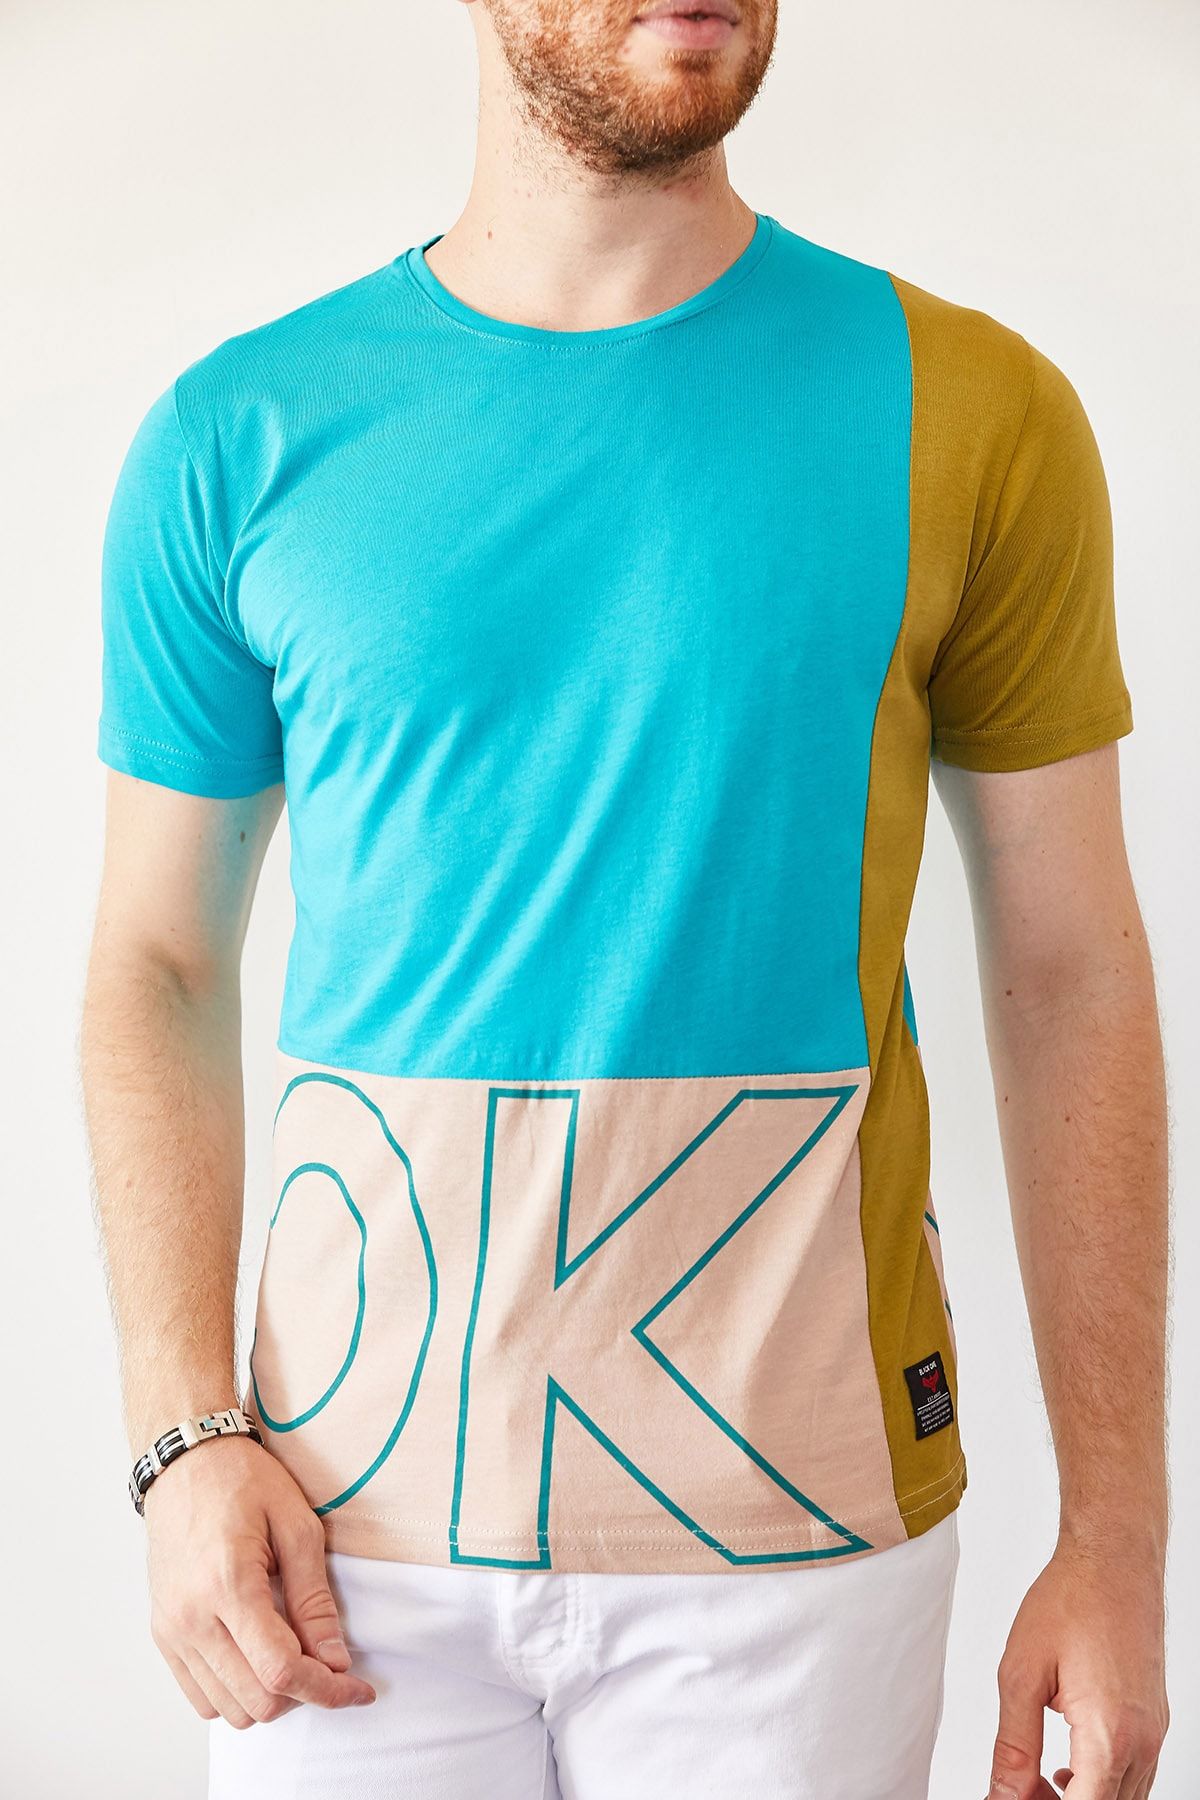 XHAN Erkek Turkuaz & Krem Baskılı T-shirt 0yxe1-44021-13